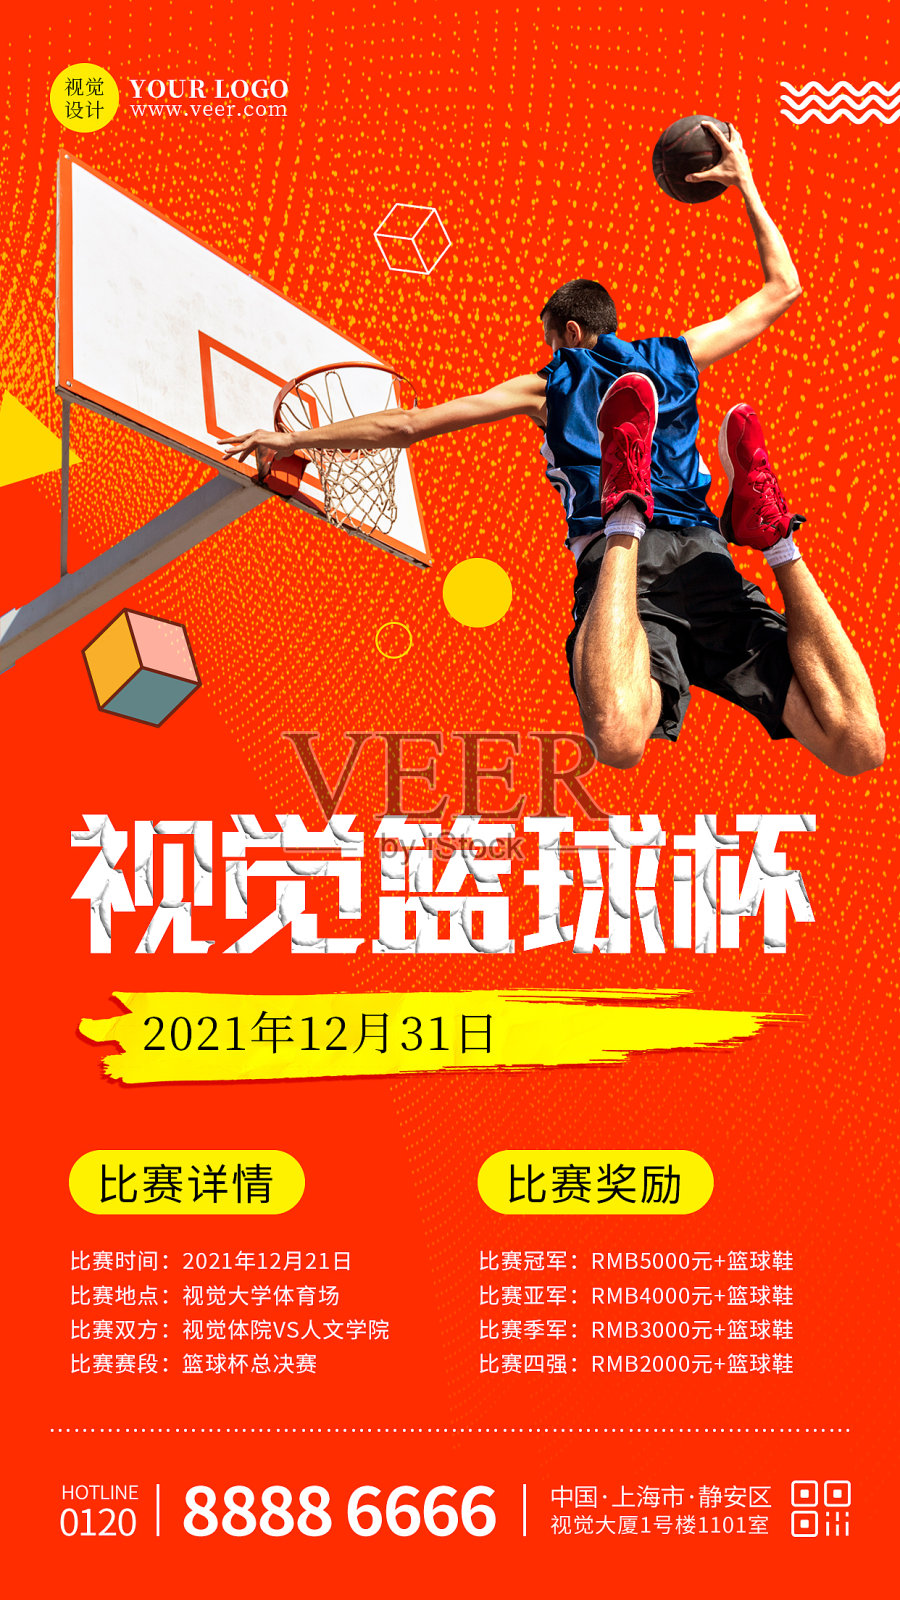 创意橙红色篮球杯比赛手机海报设计模板素材